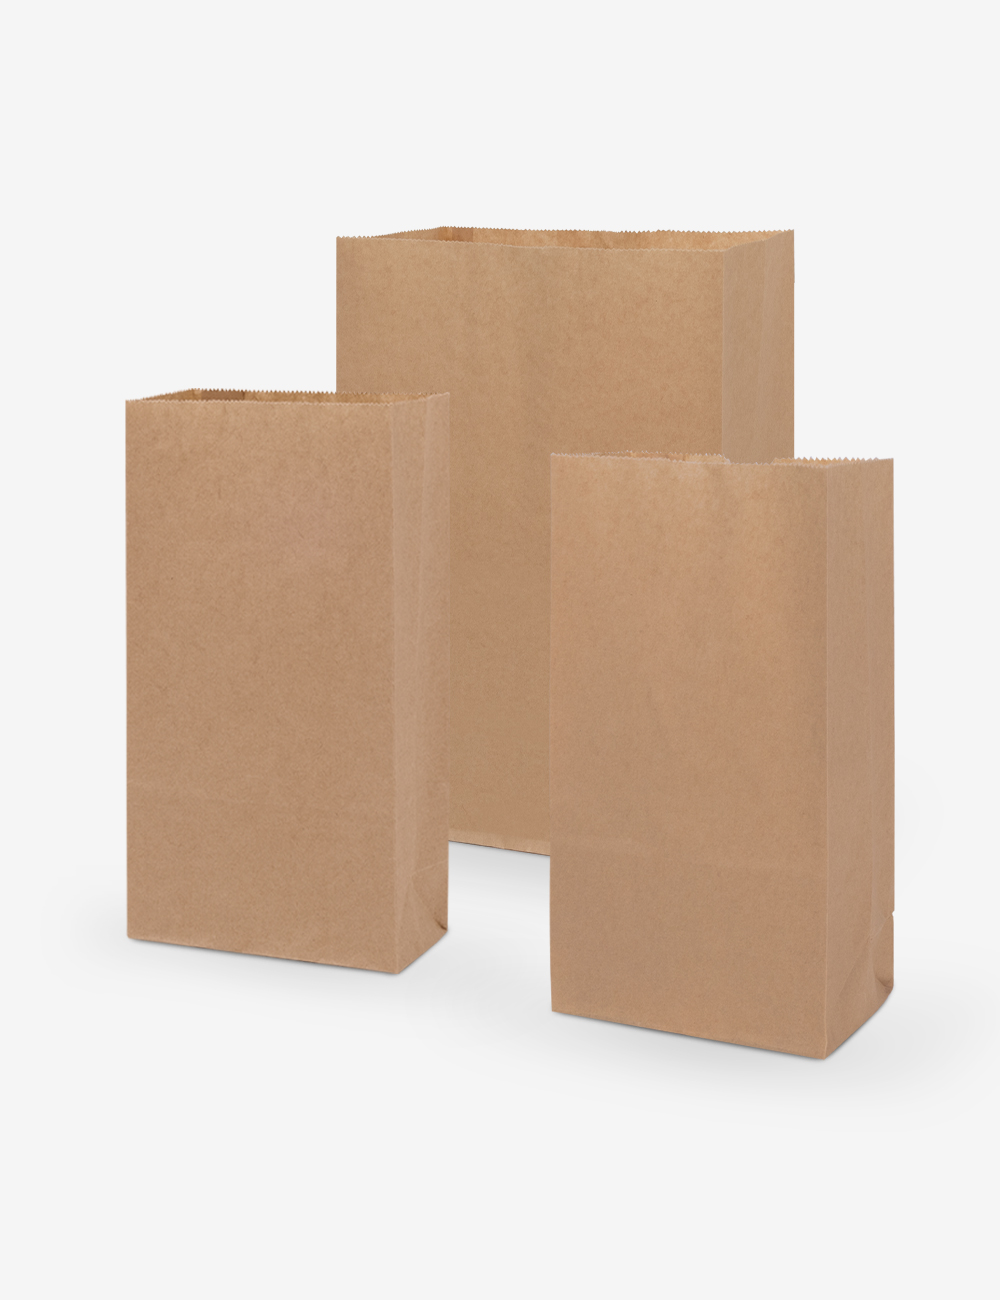 크라프트 코팅 각대 종이봉투 (1,000장) 5가지 사이즈